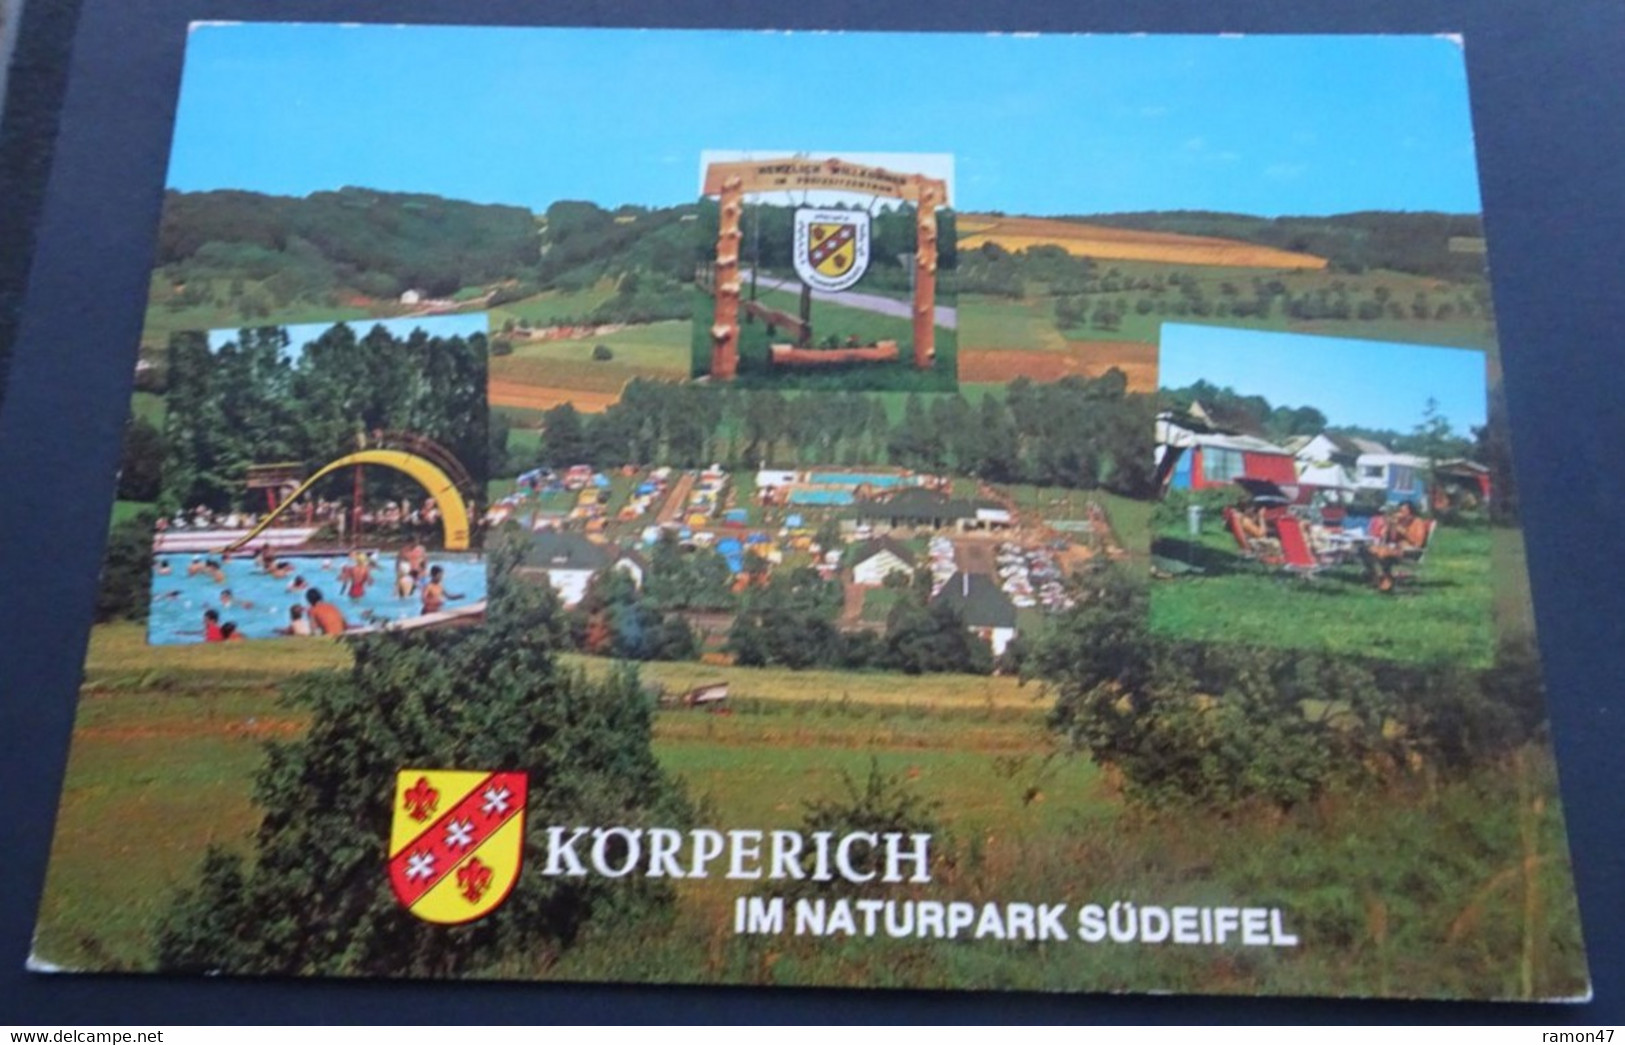 Körperich Krs. Bitburg Im Naturpark Südeifel - Campingplatz Und Beheiztes Freibad - Werbeverlag Gorzinski, Mannheim - Bitburg